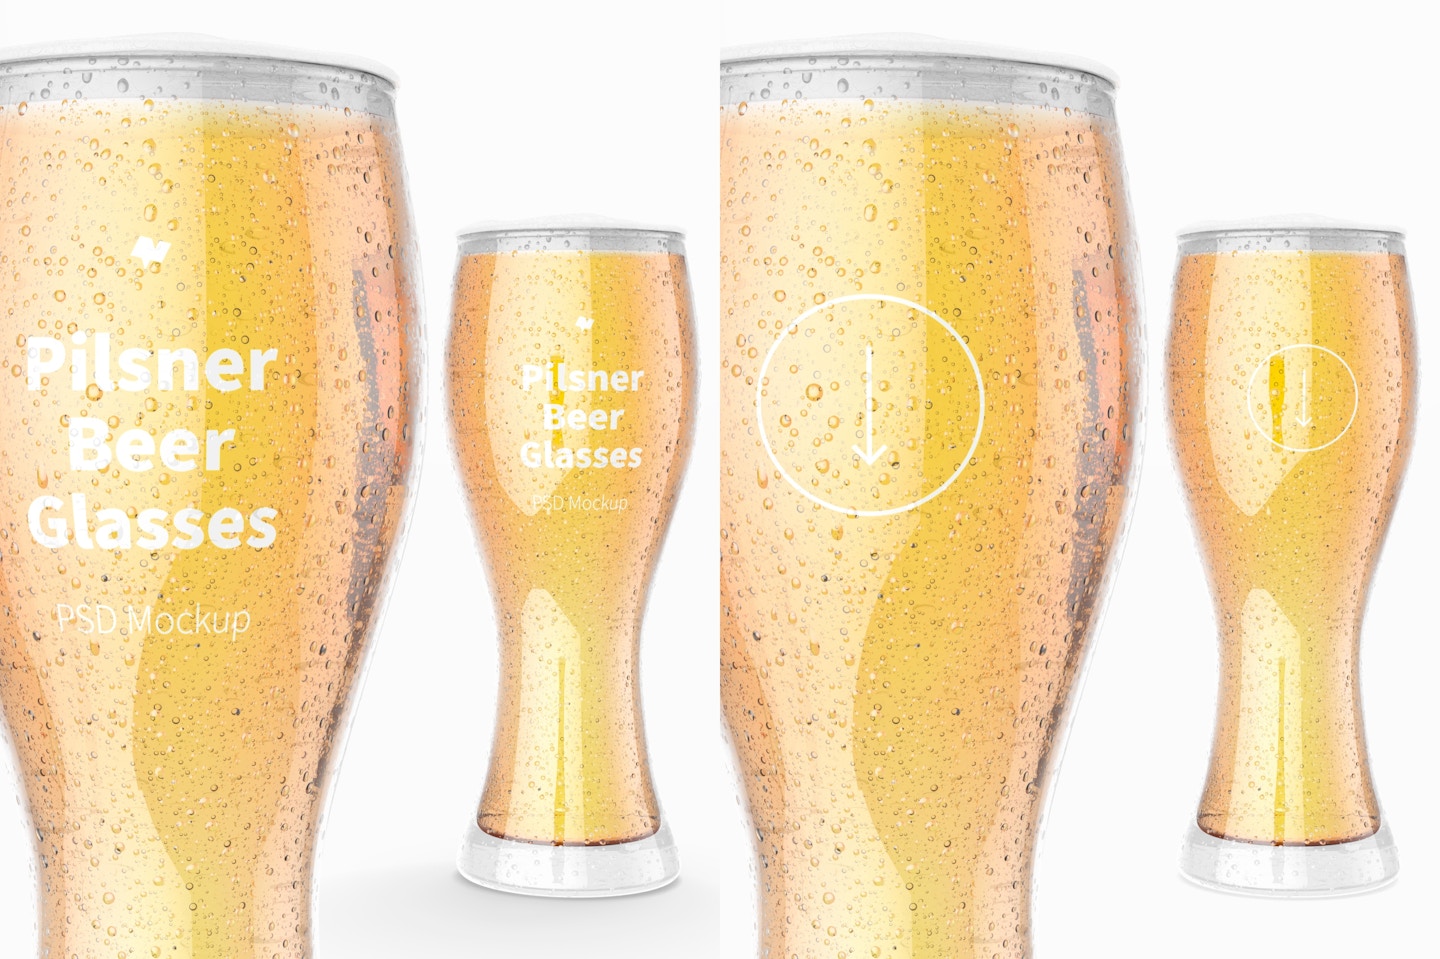 Pilsner Beer Glasses Mockup, Close Up